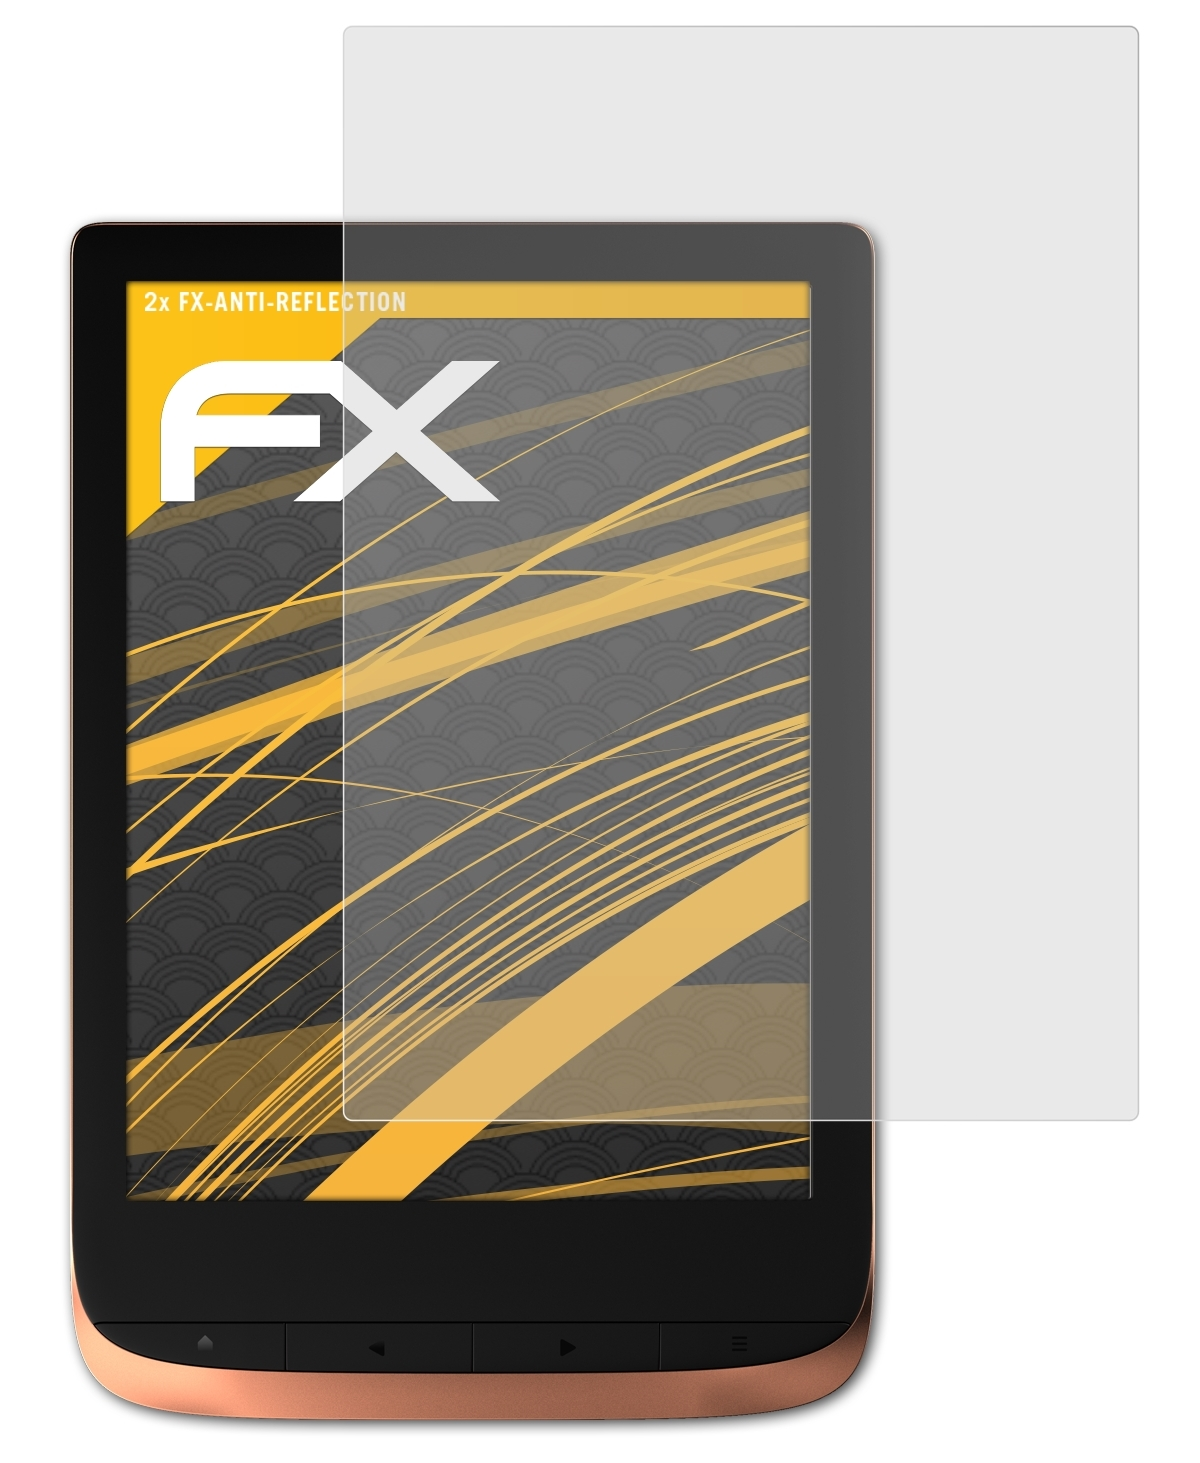 ATFOLIX 2x FX-Antireflex Displayschutz(für HD 3) PocketBook Touch